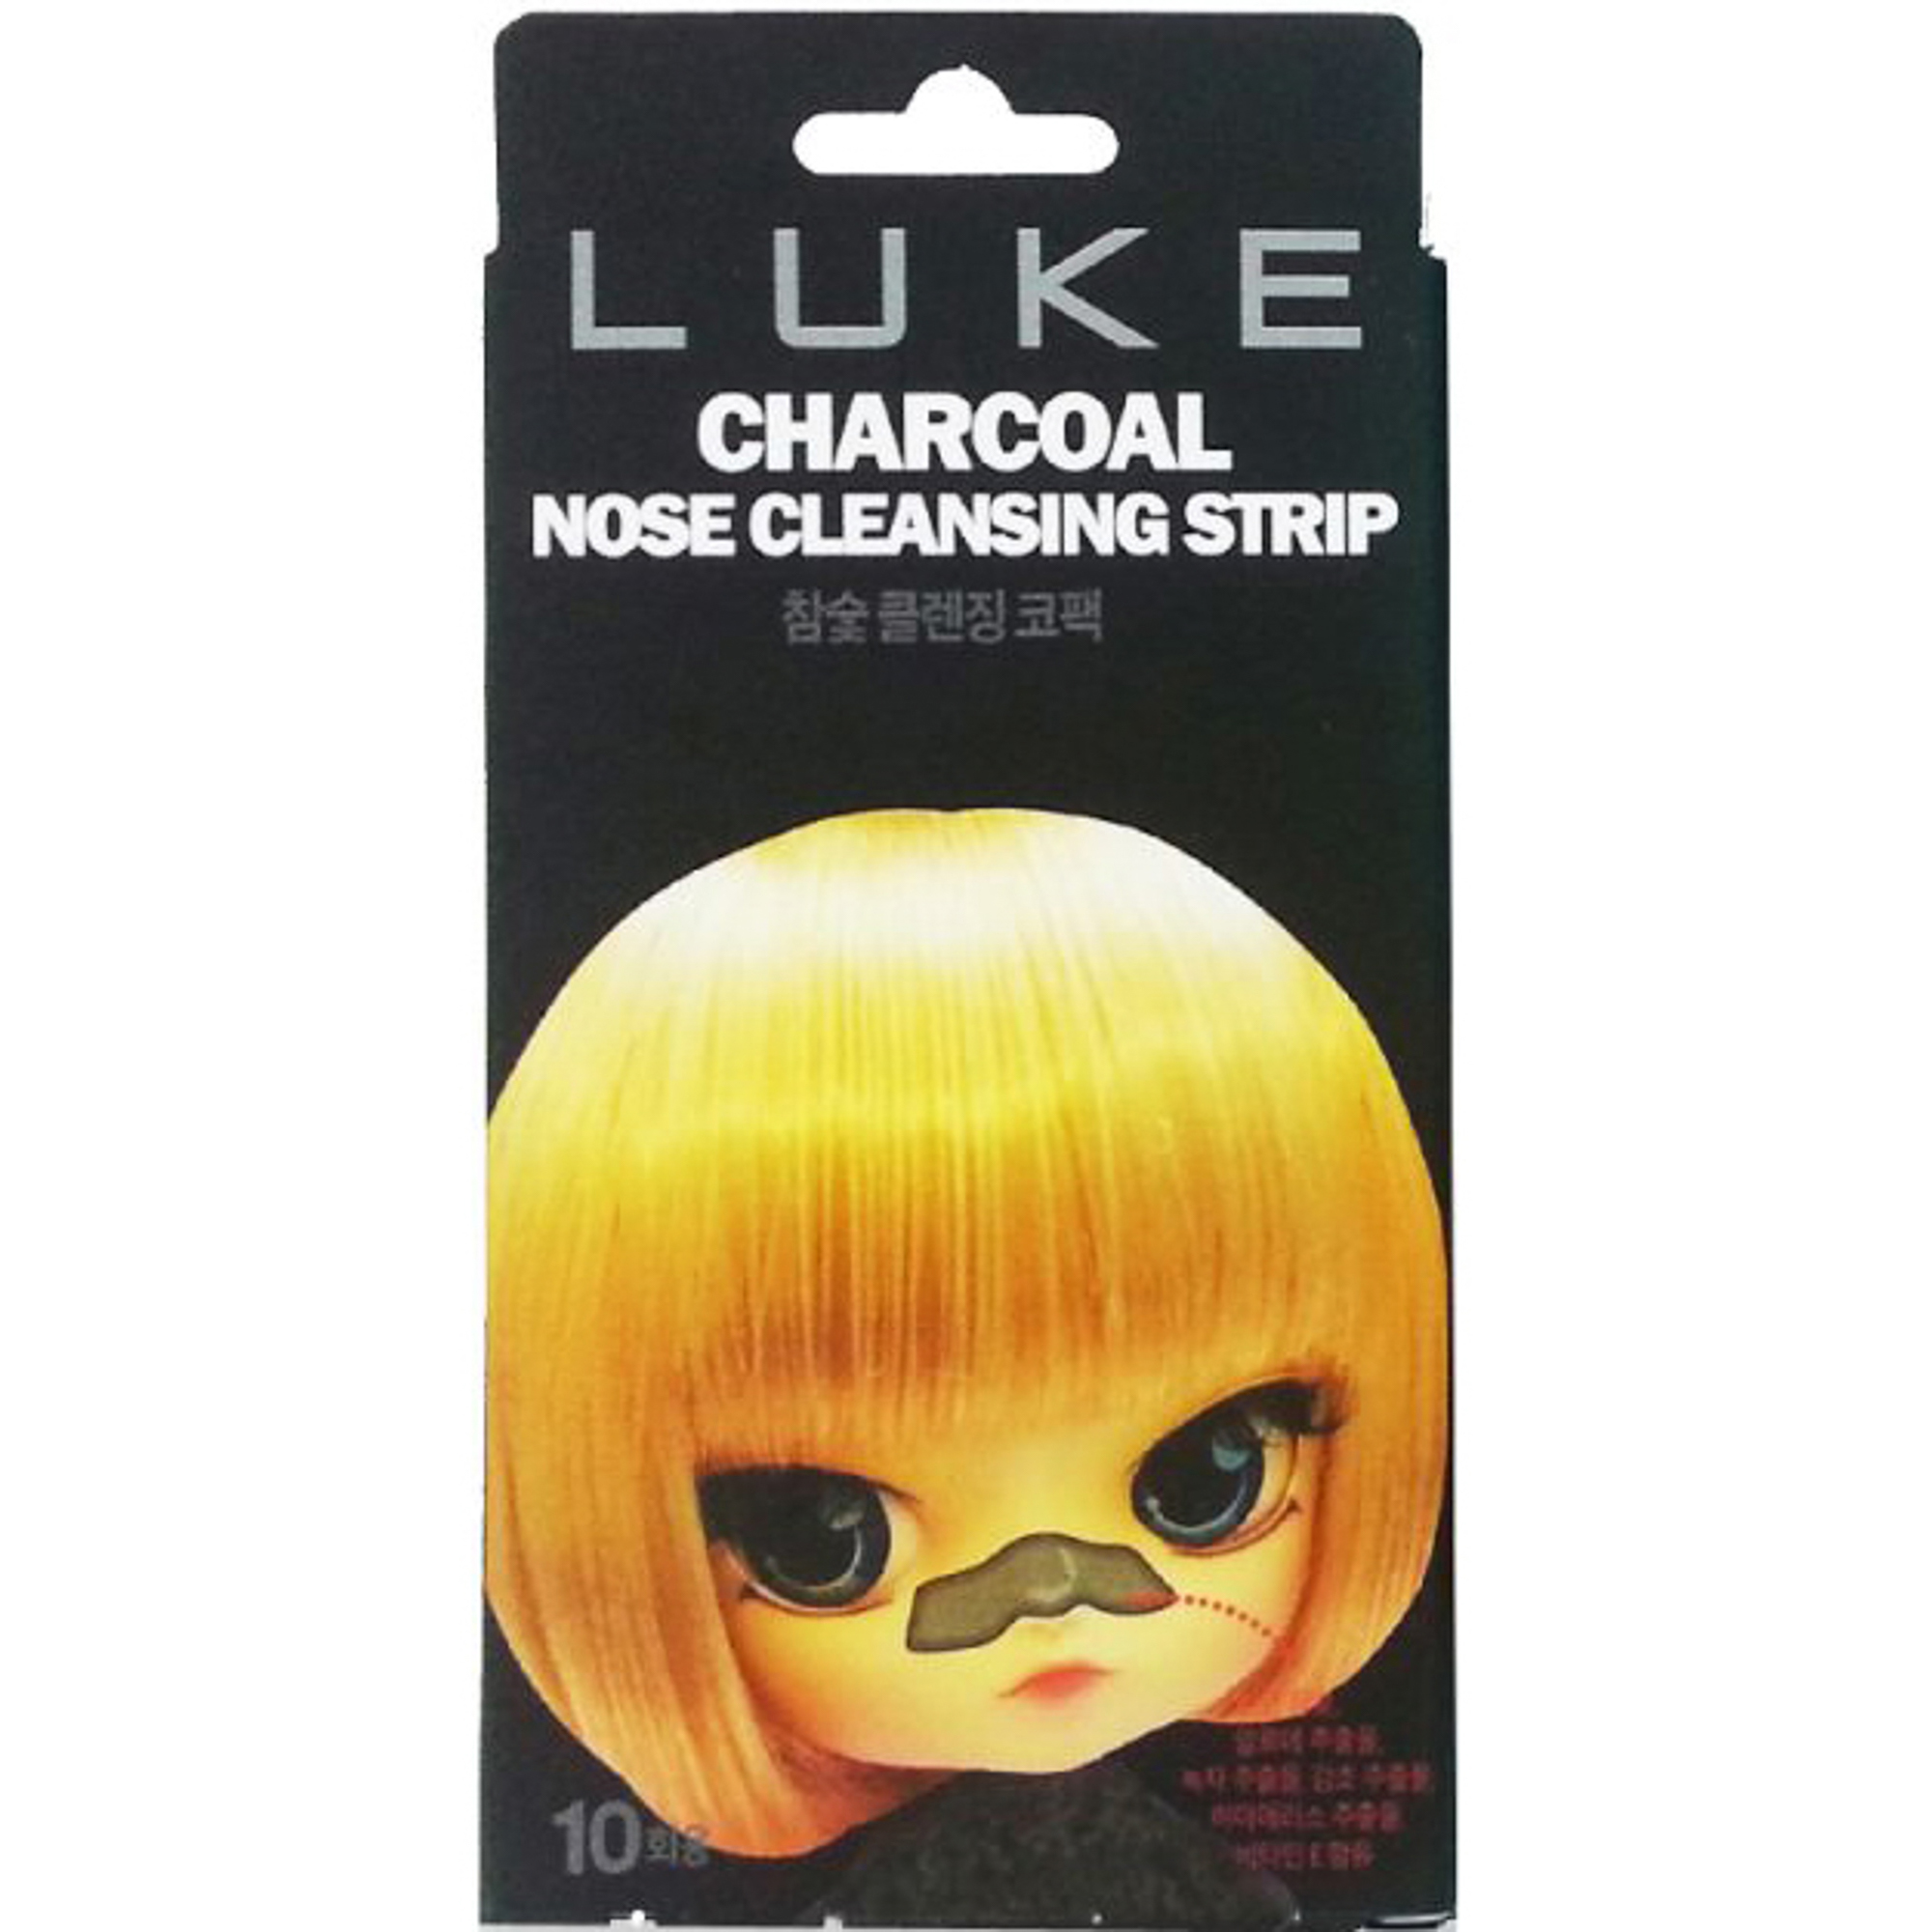 Очищающие полоски Luke Charcoal Nose Cleansing Strip 10 шт flagswea charcoal халат xl